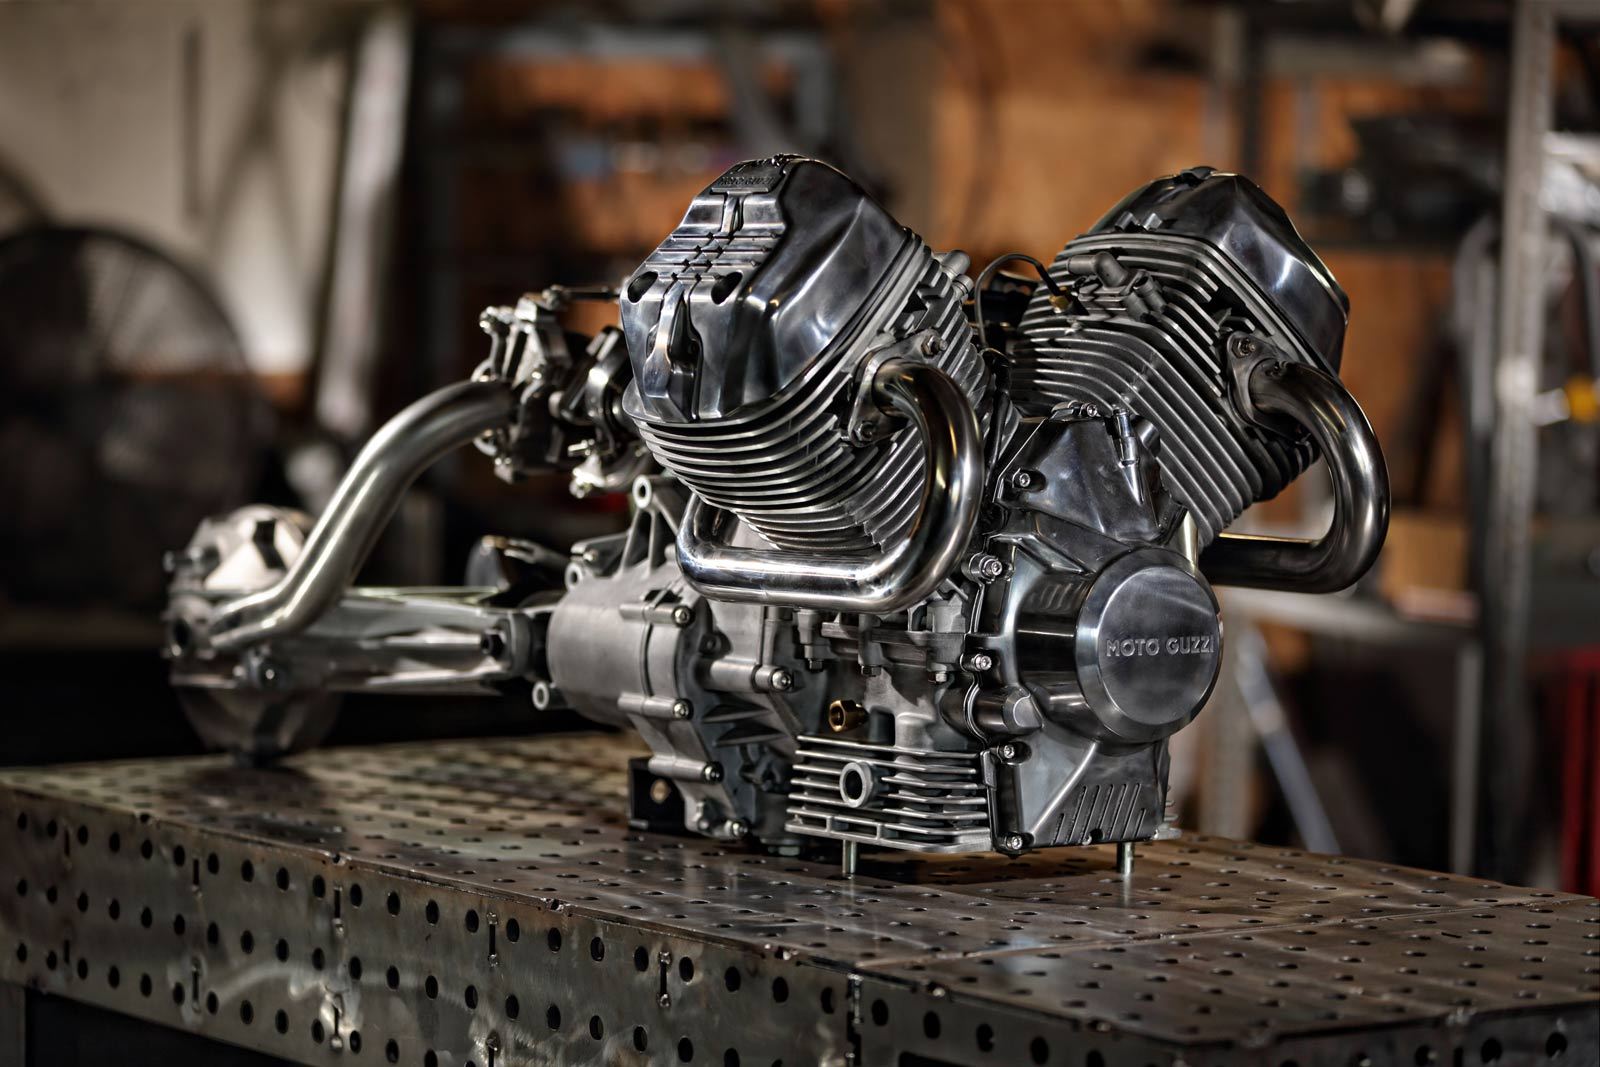 Moto Guzzi V9 Turbo by Craig Rodsmith